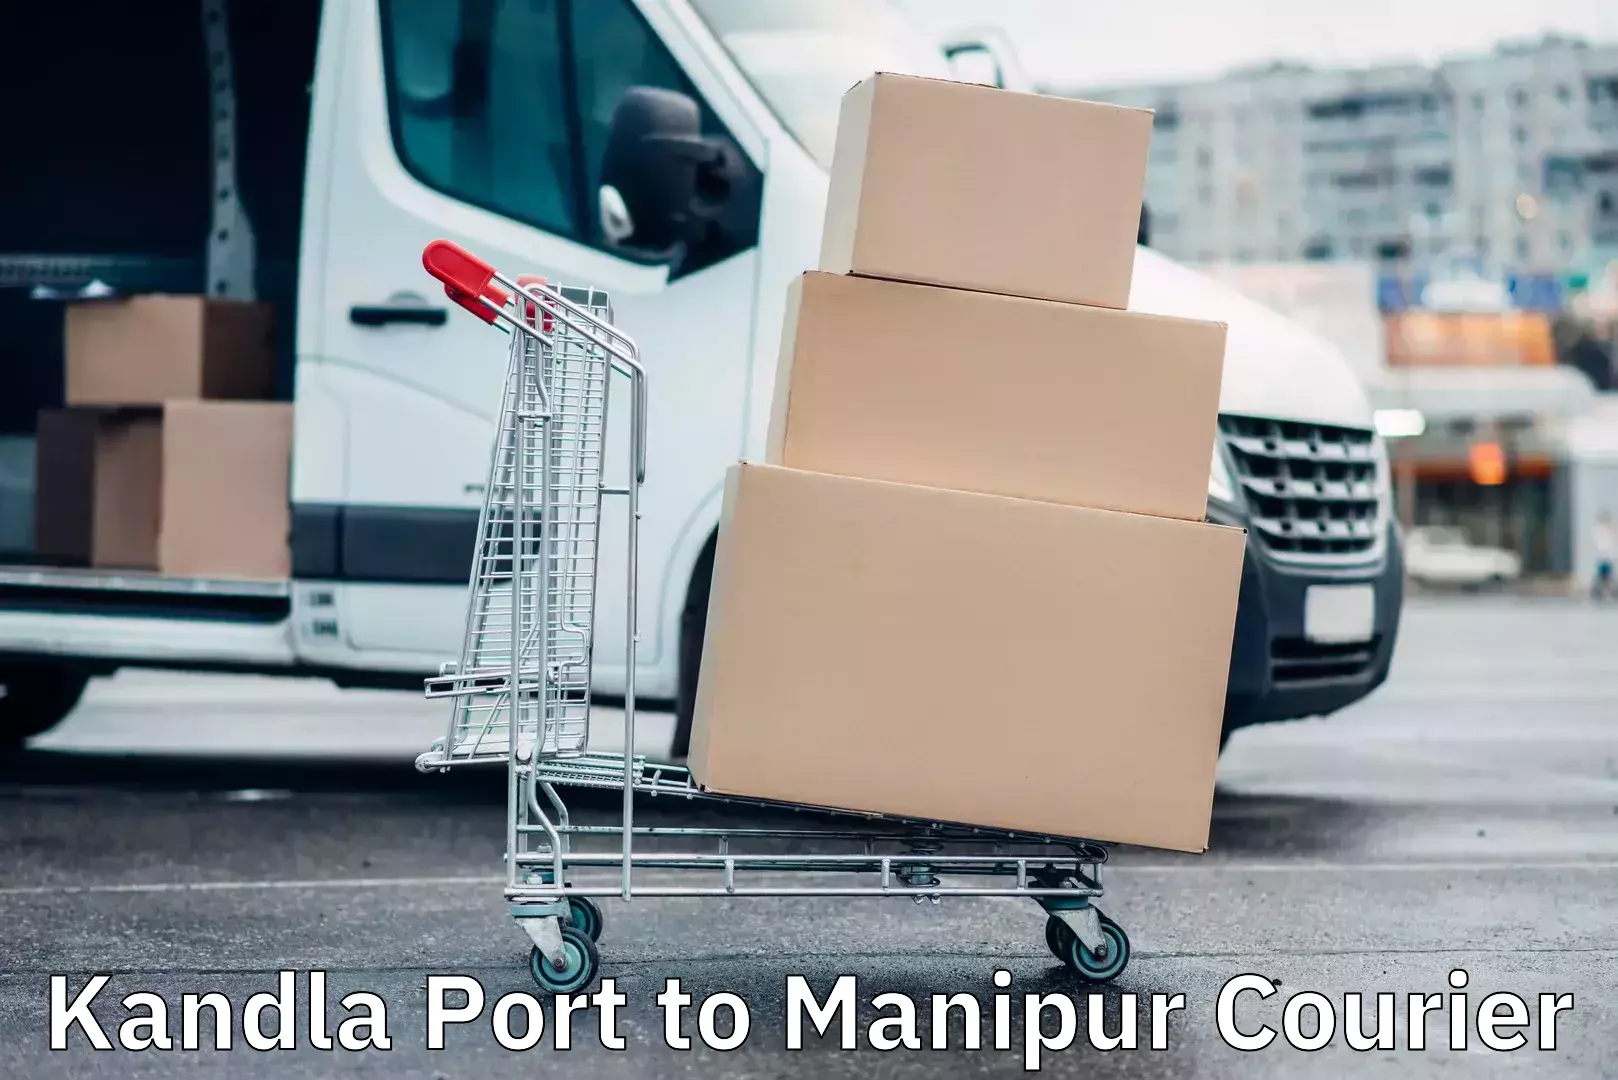 Courier service innovation Kandla Port to Kanti